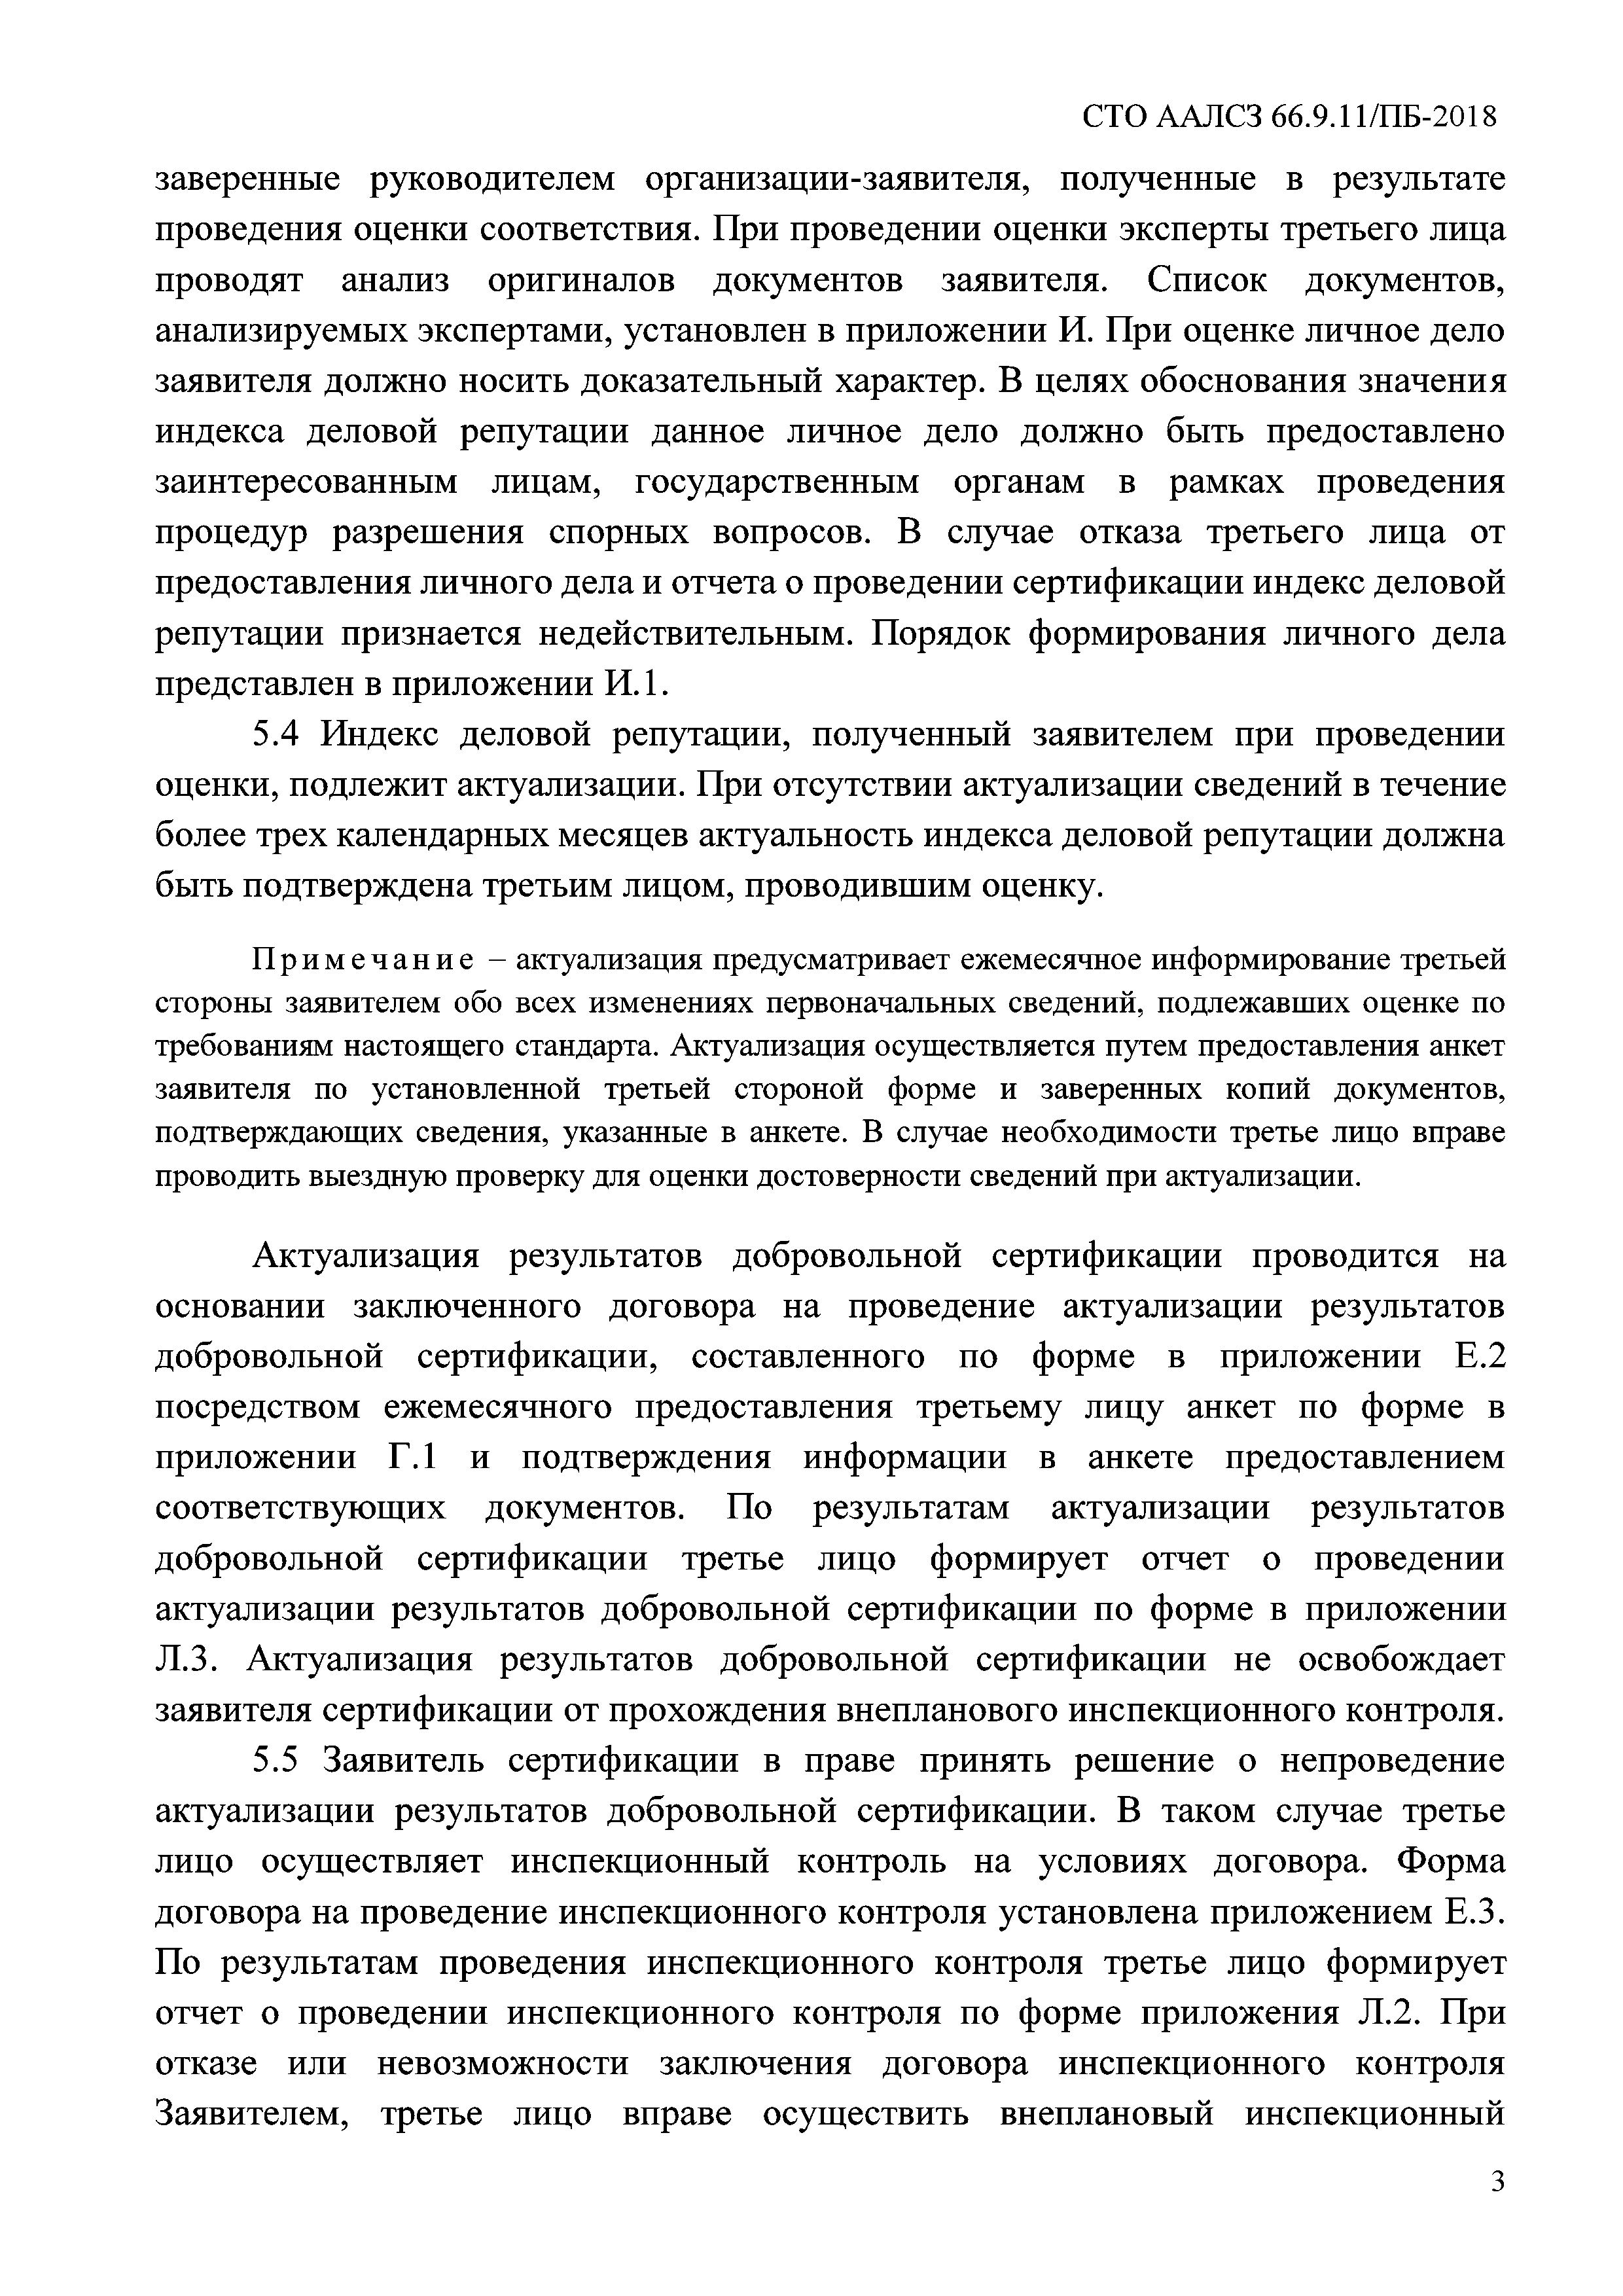 СТО ААЛСЗ 66.9.11/ПБ-2018